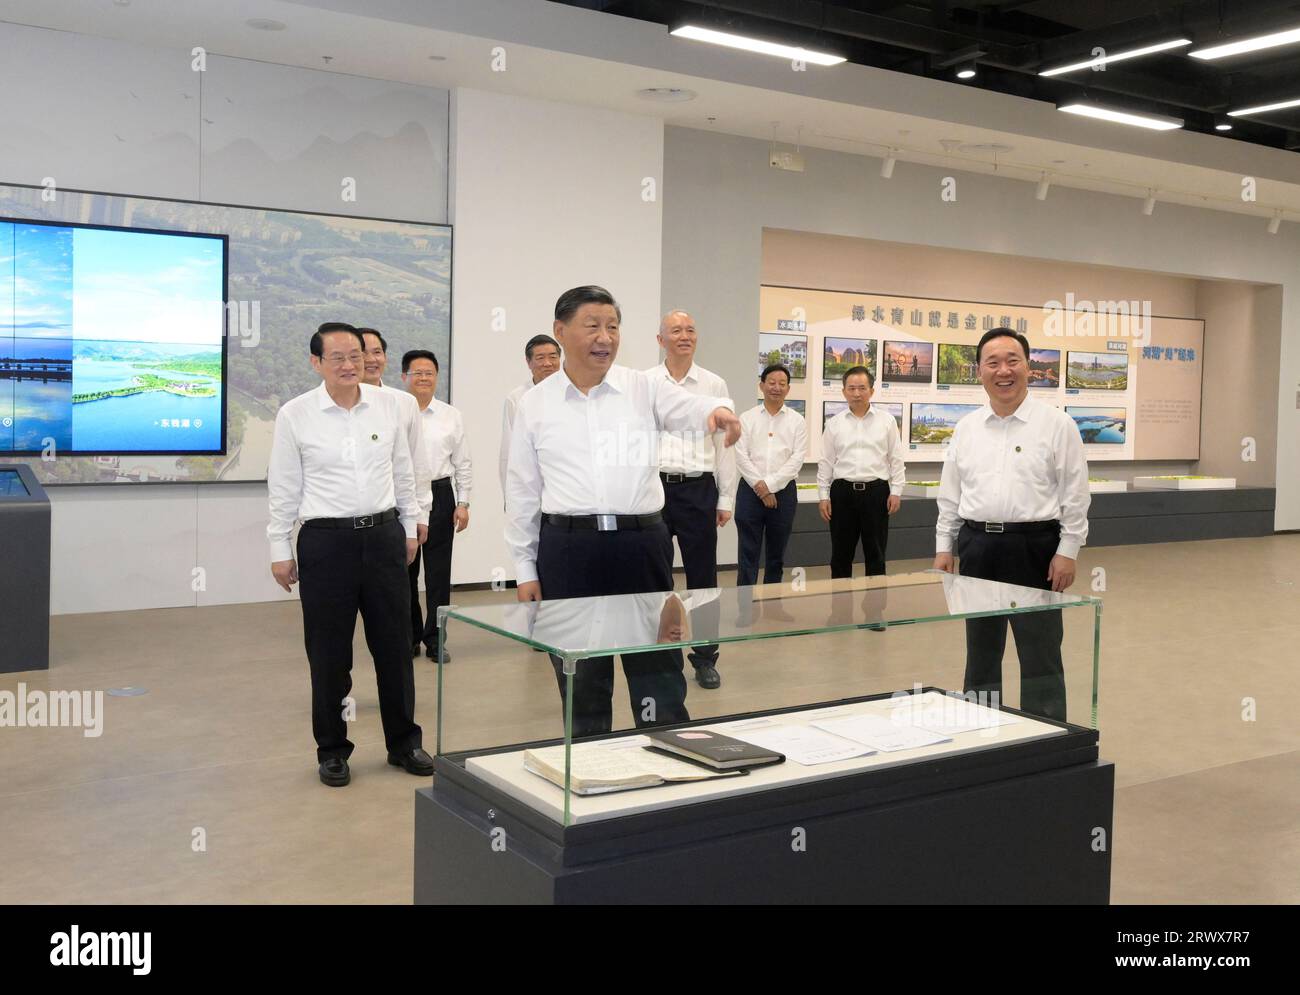 (230921) -- HANGZHOU, 21. September 2023 (Xinhua) -- Xi Jinping, Generalsekretär des Zentralkomitees der Kommunistischen Partei Chinas, inspiziert einen Kanal-Kulturpark in Shaoxing, Ostchinesische Provinz Zhejiang, 20. September 2023. XI inspizierte die Stadt Shaoxing in der ostchinesischen Provinz Zhejiang am Mittwochnachmittag. XI besuchte eine Ausstellungshalle mit dem „Fengqiao-Modell“ zur Förderung der Governance auf Gemeindeebene, um die Entwicklung des Streitbeilegungsmechanismus zu überprüfen und mehr über seine innovative Entwicklung in der neuen Ära zu erfahren. XI ging auch in einen Kanal Kulturpark, um mehr über das Histo zu erfahren Stockfoto